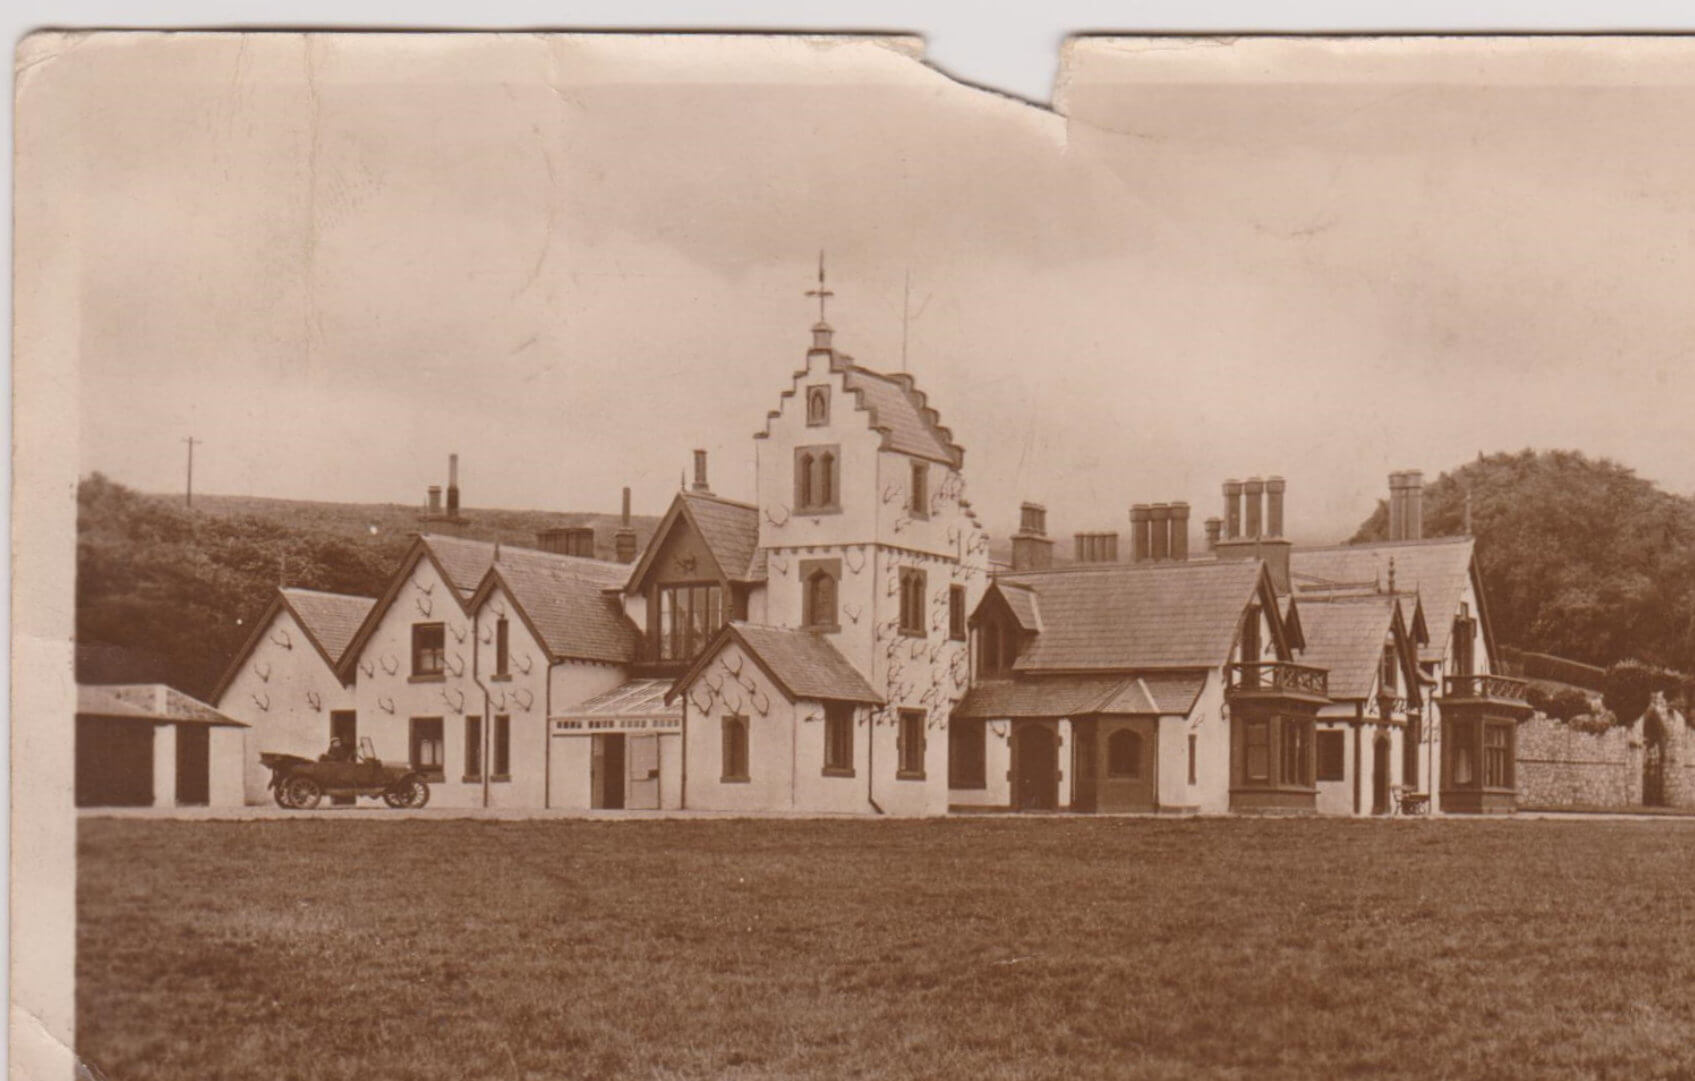 The Dougarie estate in the victorian era